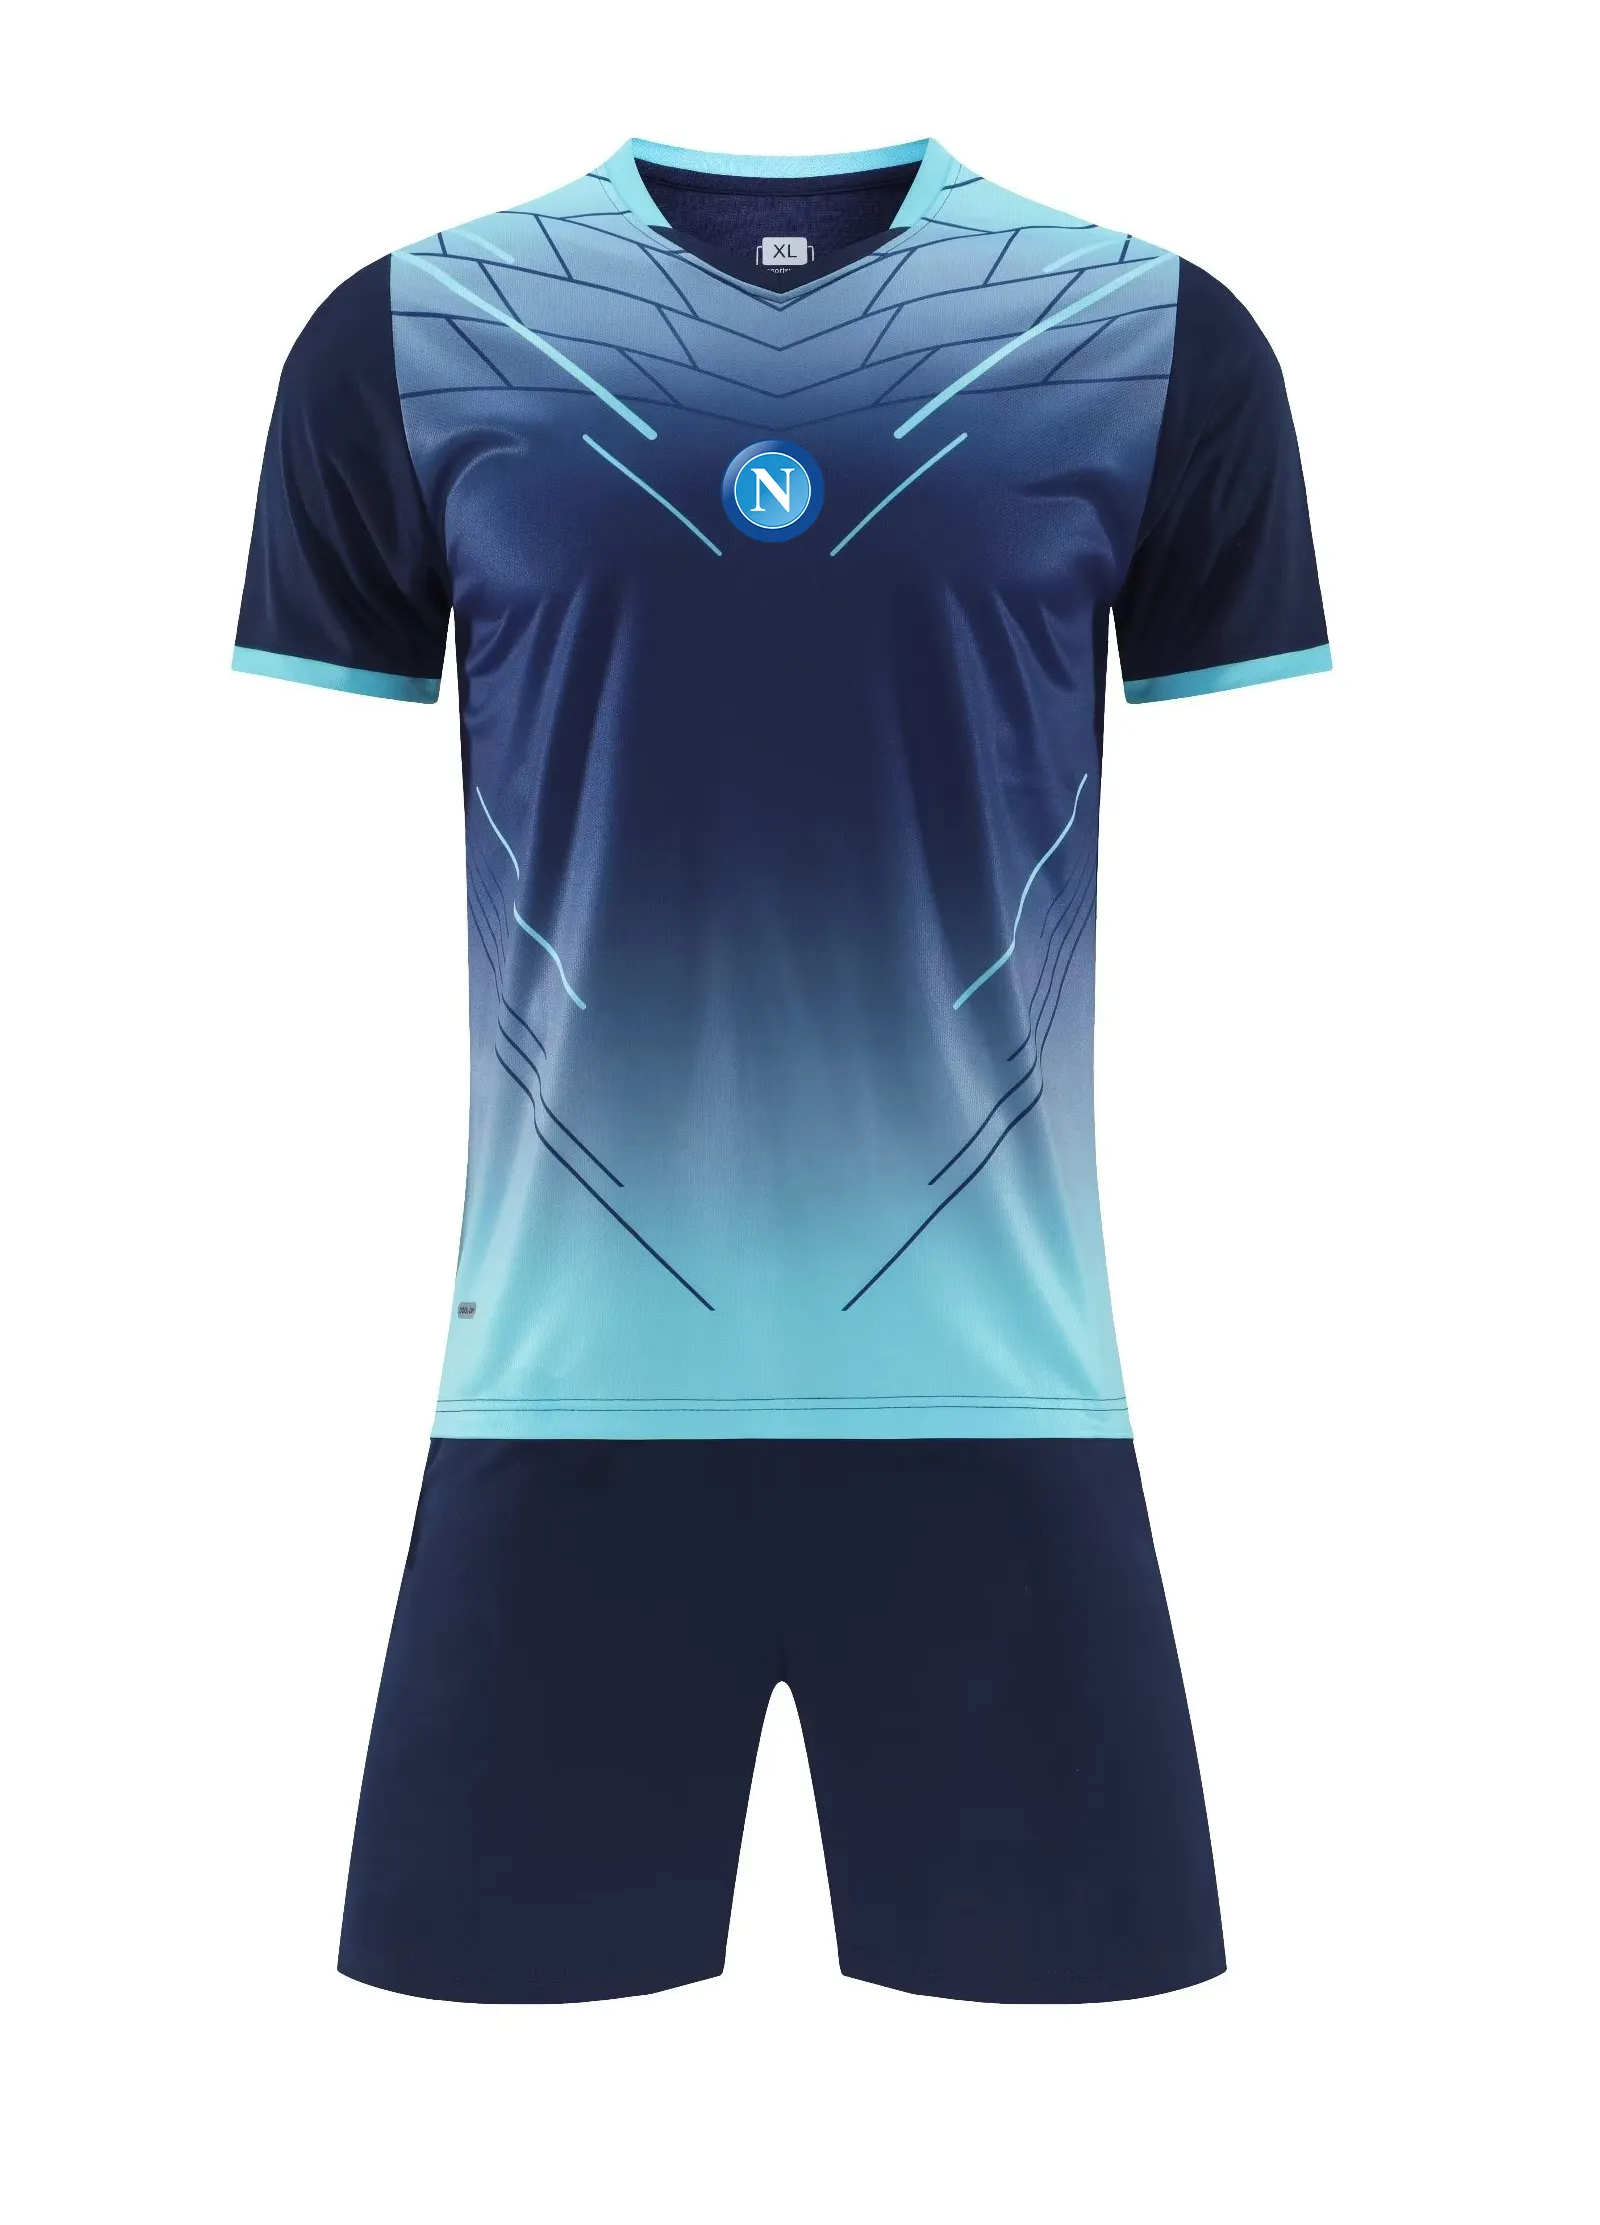 S.S.C. Napoli Męskie dresy męskie Wysokiej jakości sportowy trening sportowy na świeżym powietrzu z krótkimi rękawami i cienką koszulą sportową